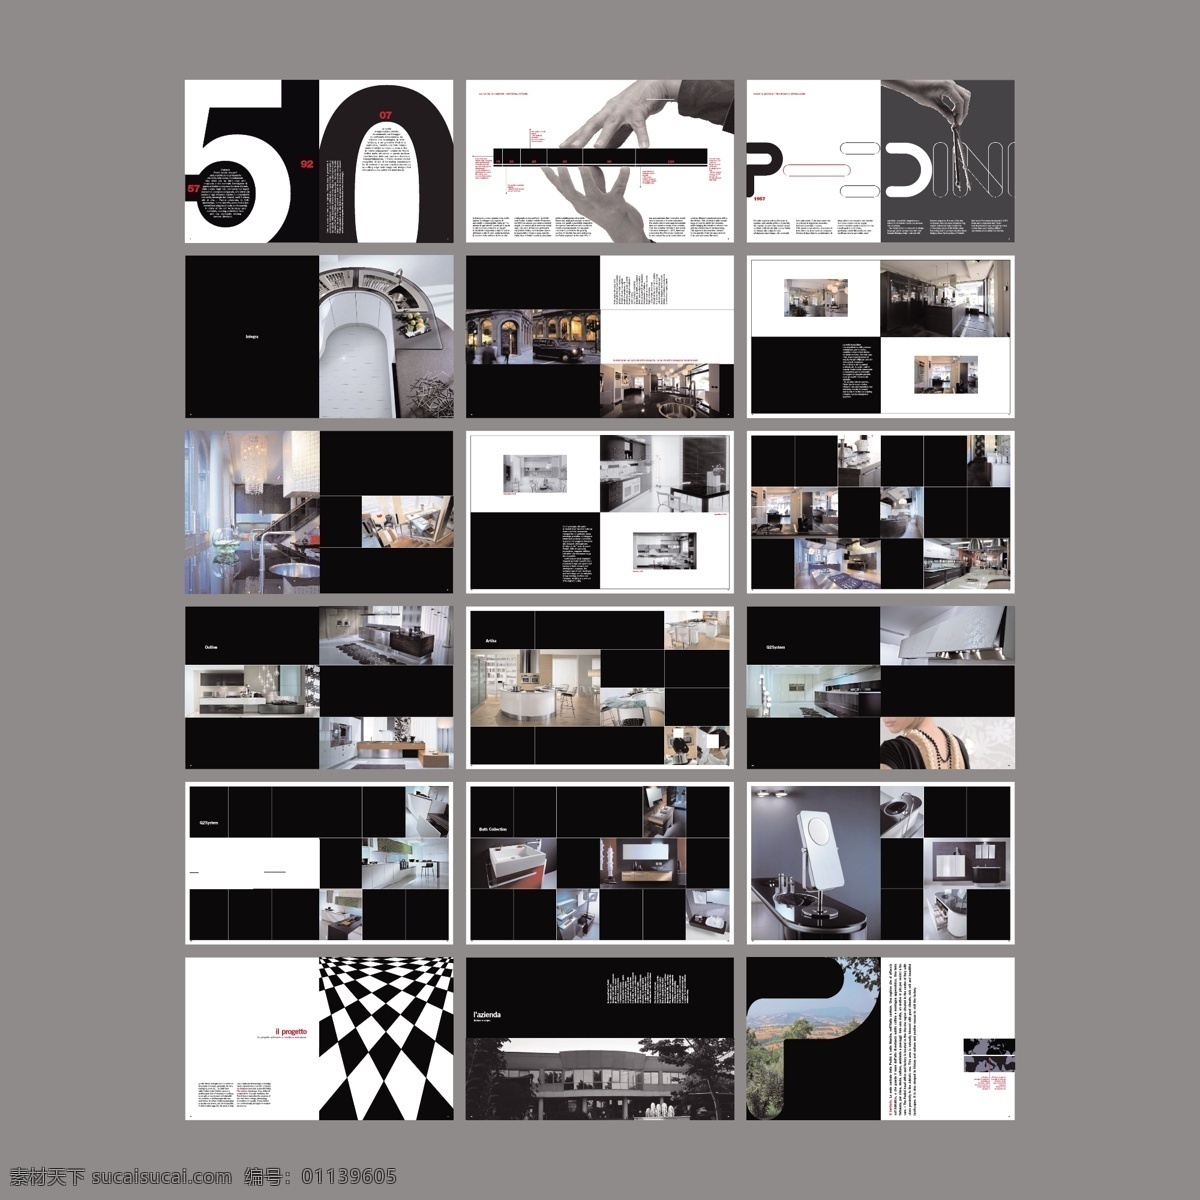 创意画册 黑白时尚杂志 黑白网格 方块 欧式风格杂志 公司画册 企业画册 集团画册期刊 画册设计 画册矢量模板 产品画册 室内家居 室内摄影 黑色